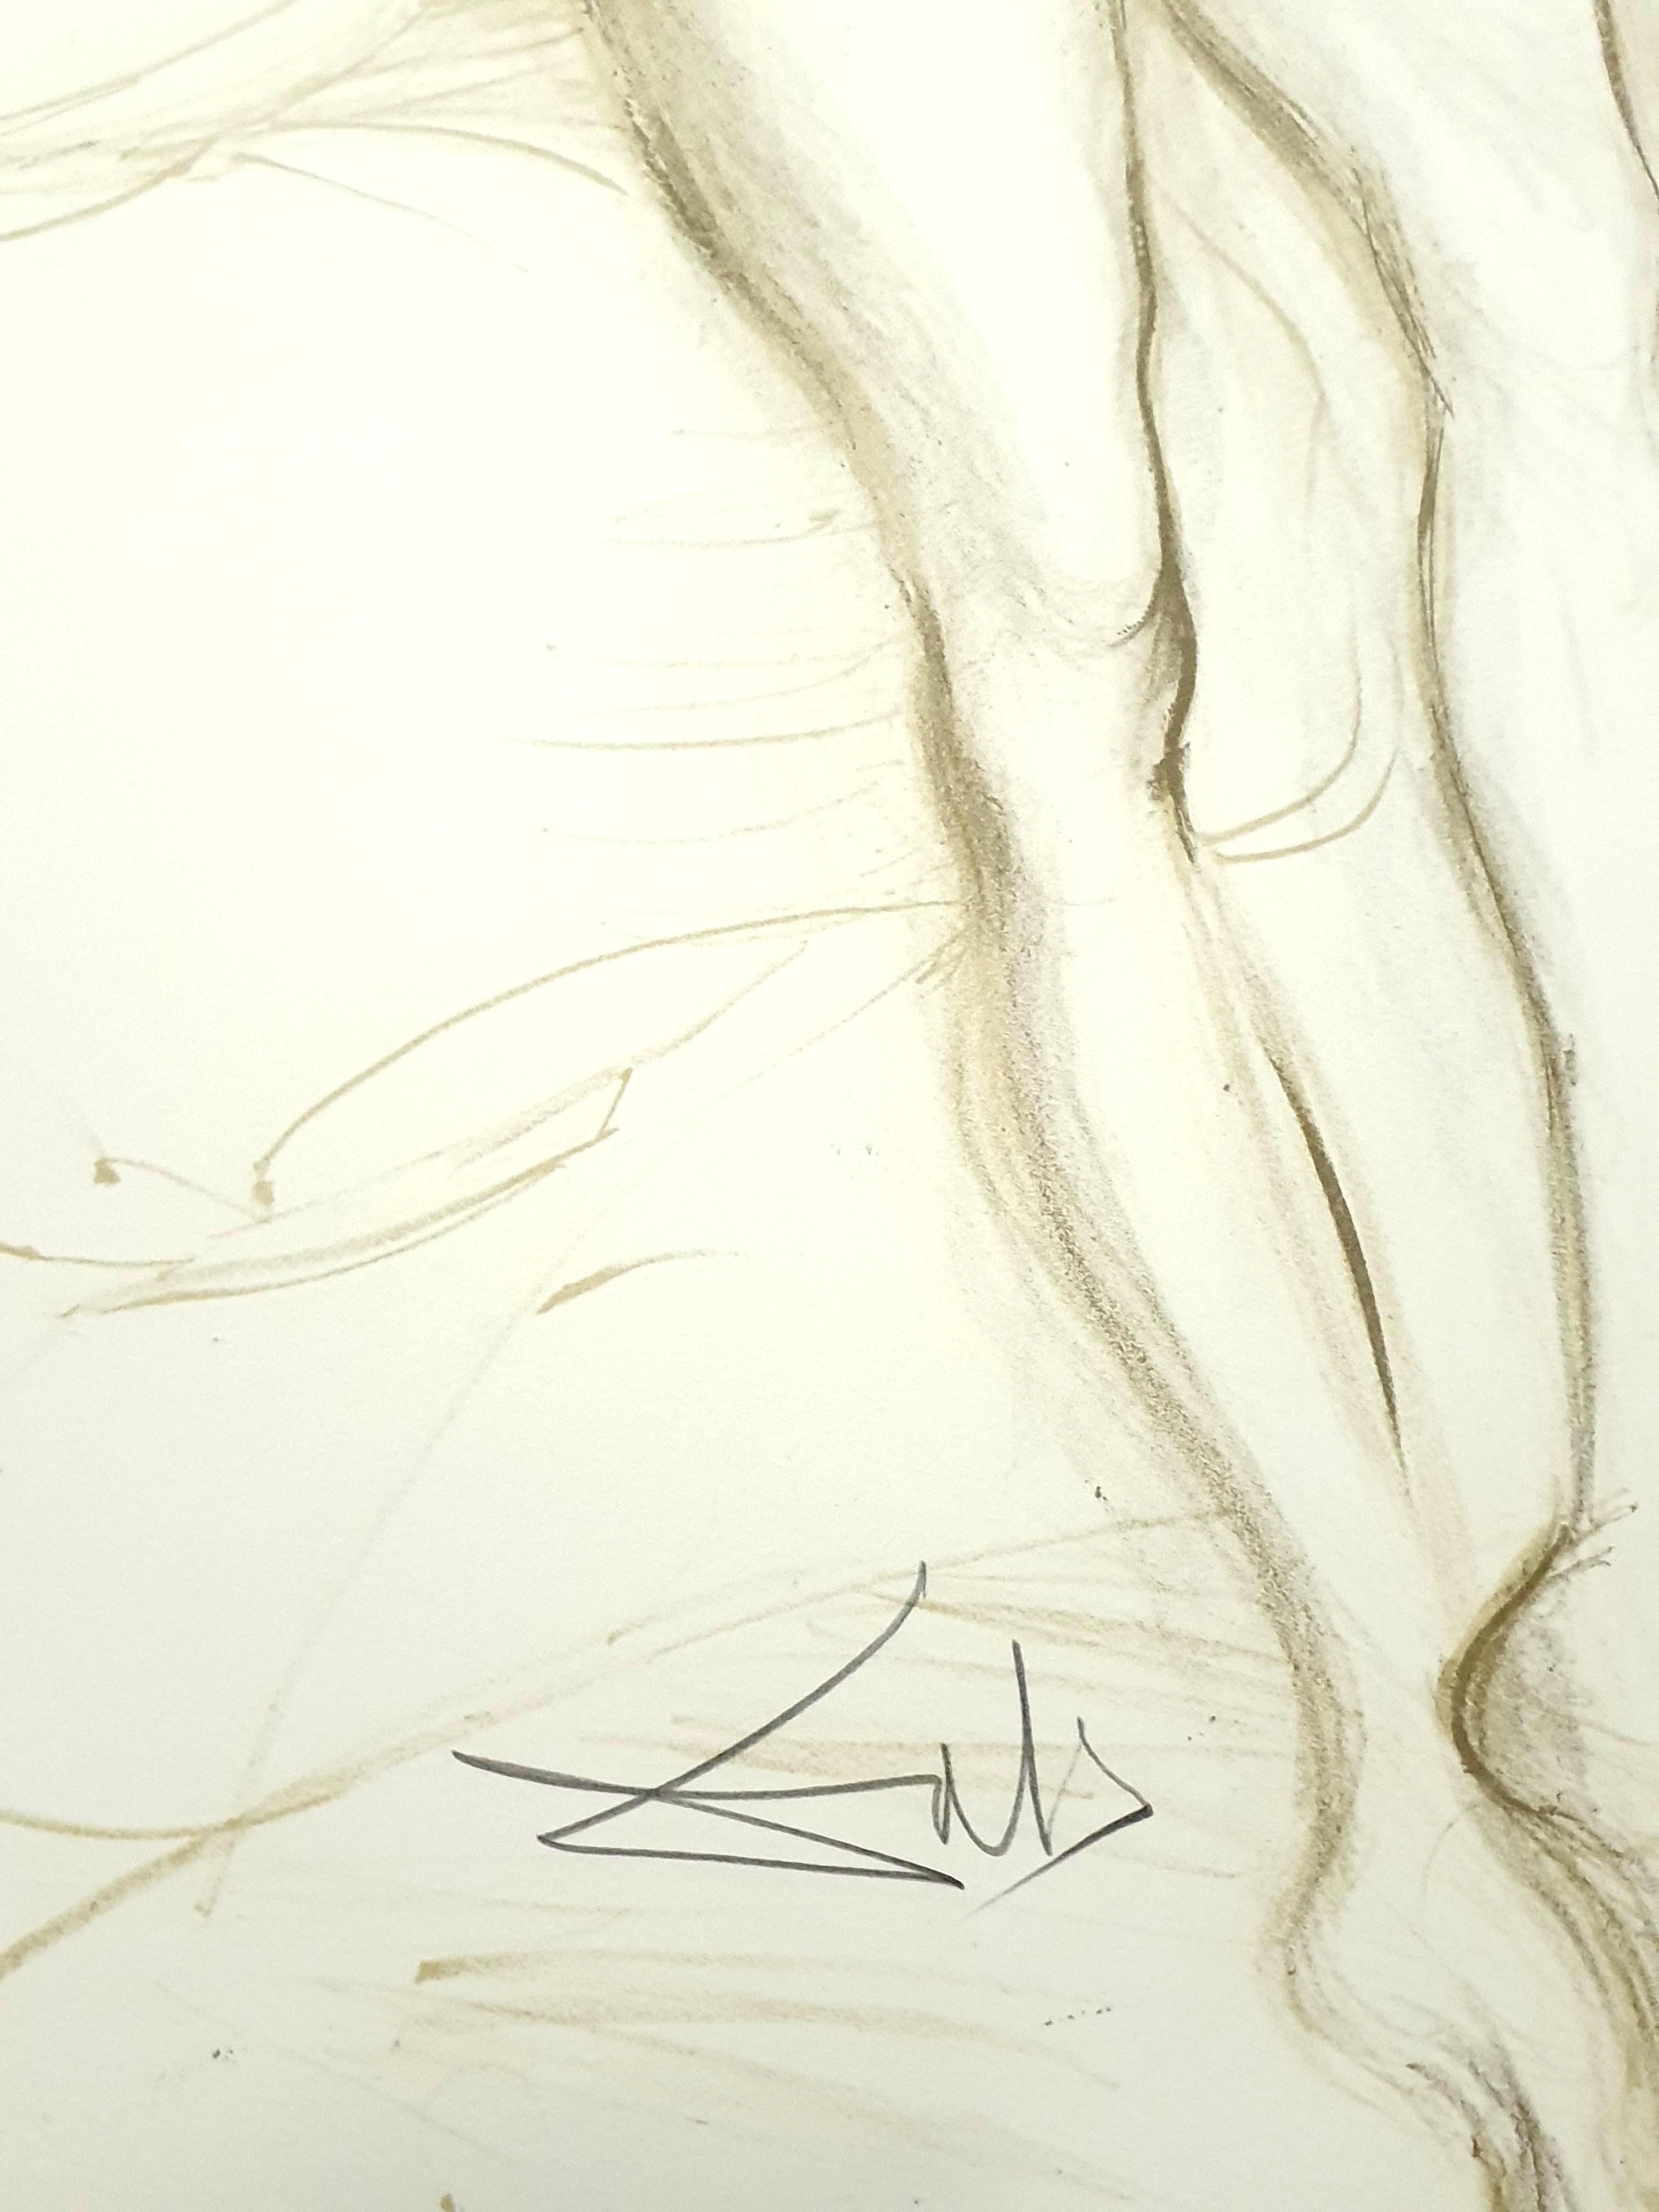 Salvador Dali - Akt mit erhobenen Armen - Original handsignierte Lithographie
Abmessungen: 77 x 55 cm
1970
Mit Bleistift signiert und nummeriert
Ausgabe : /CXX
Referenzen : Feld 70-8(Seite 158)